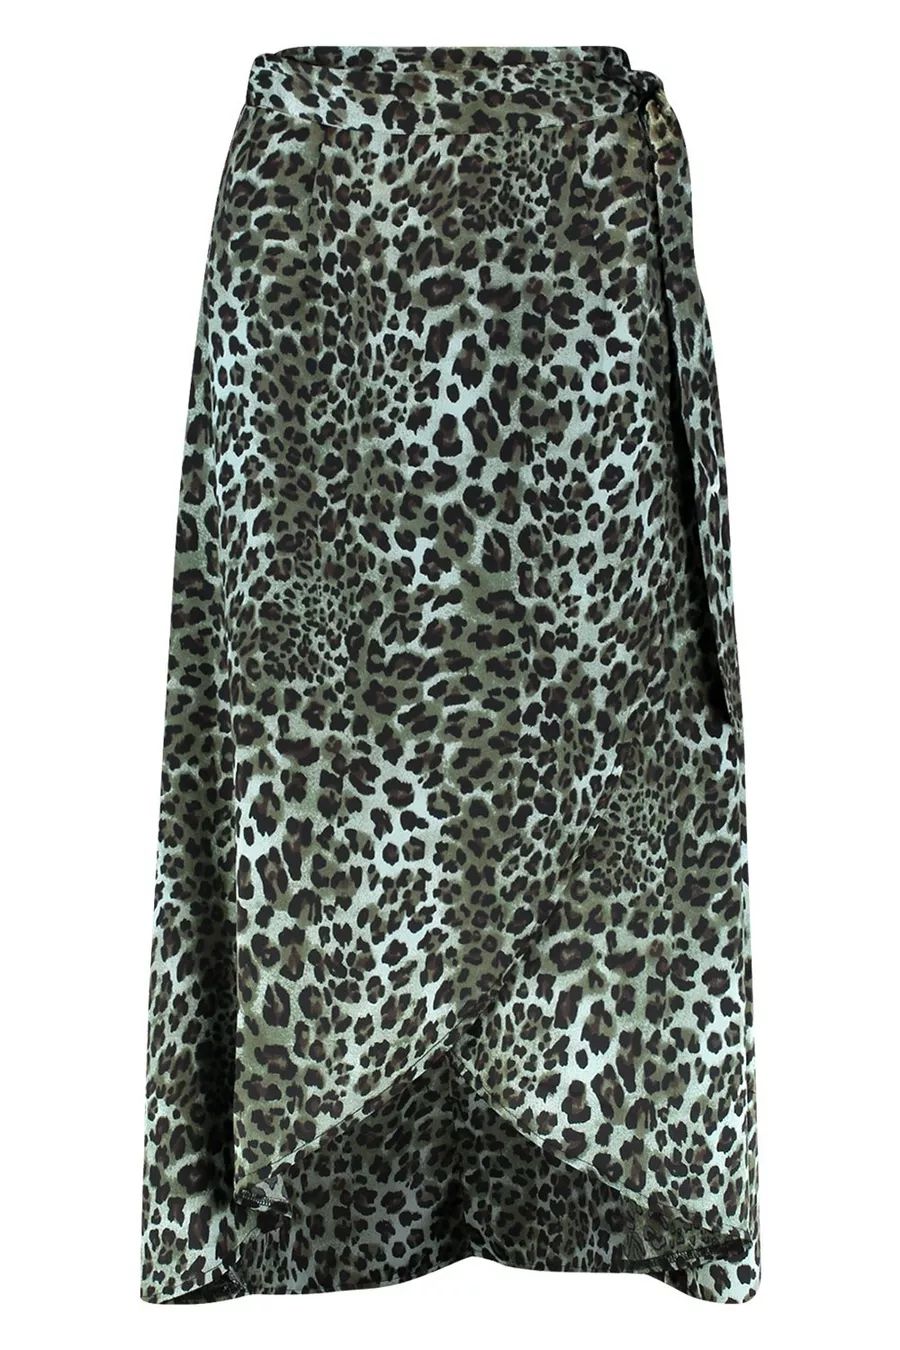 Satin Green Leopard Wrap Midi Skirt | Boohoo.com (US & CA)